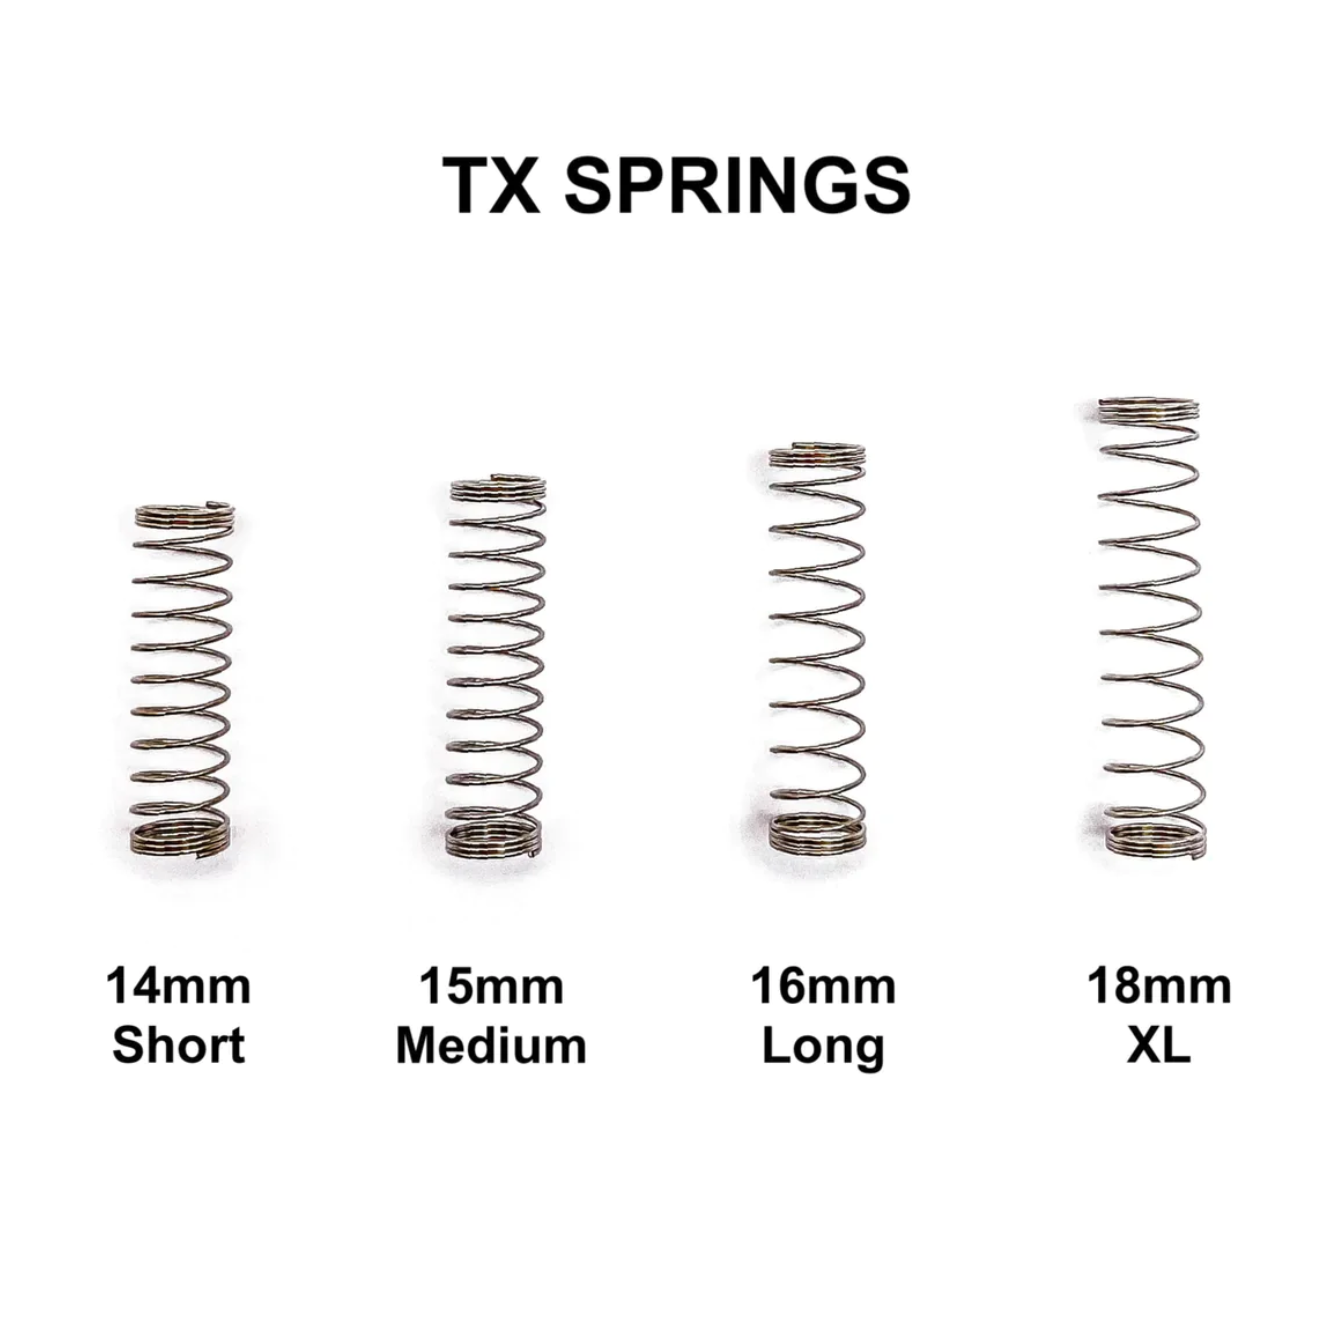 TX springs